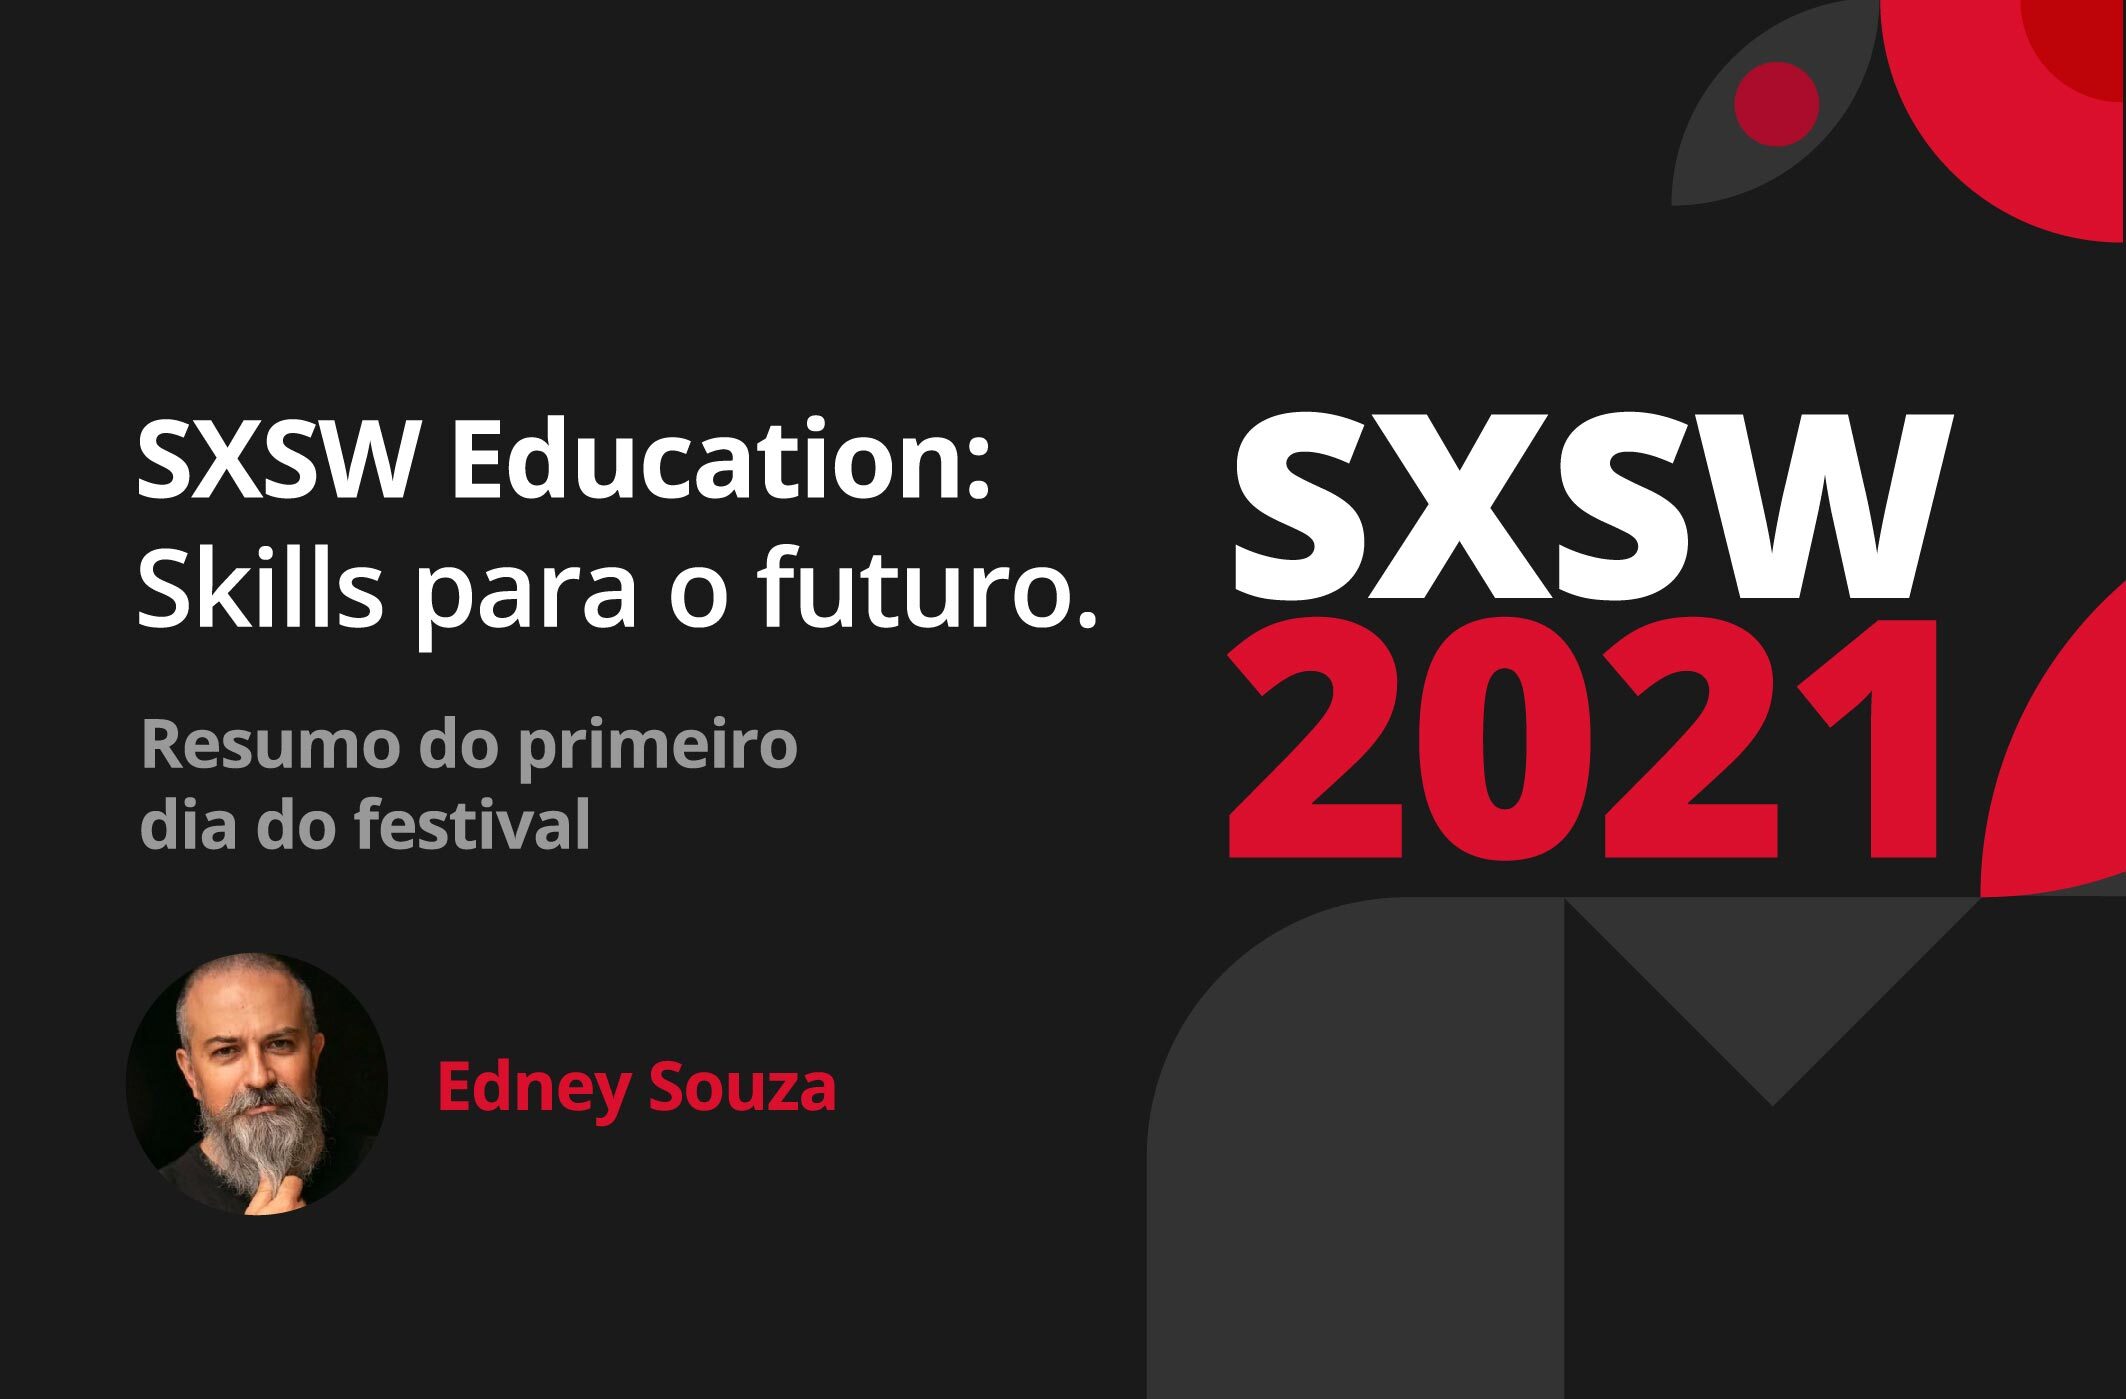 SXSW 2021 Edu: 1º dia tem Oprah Winfrey, Forbes, IBM e discussões sobre soft skills do futuro